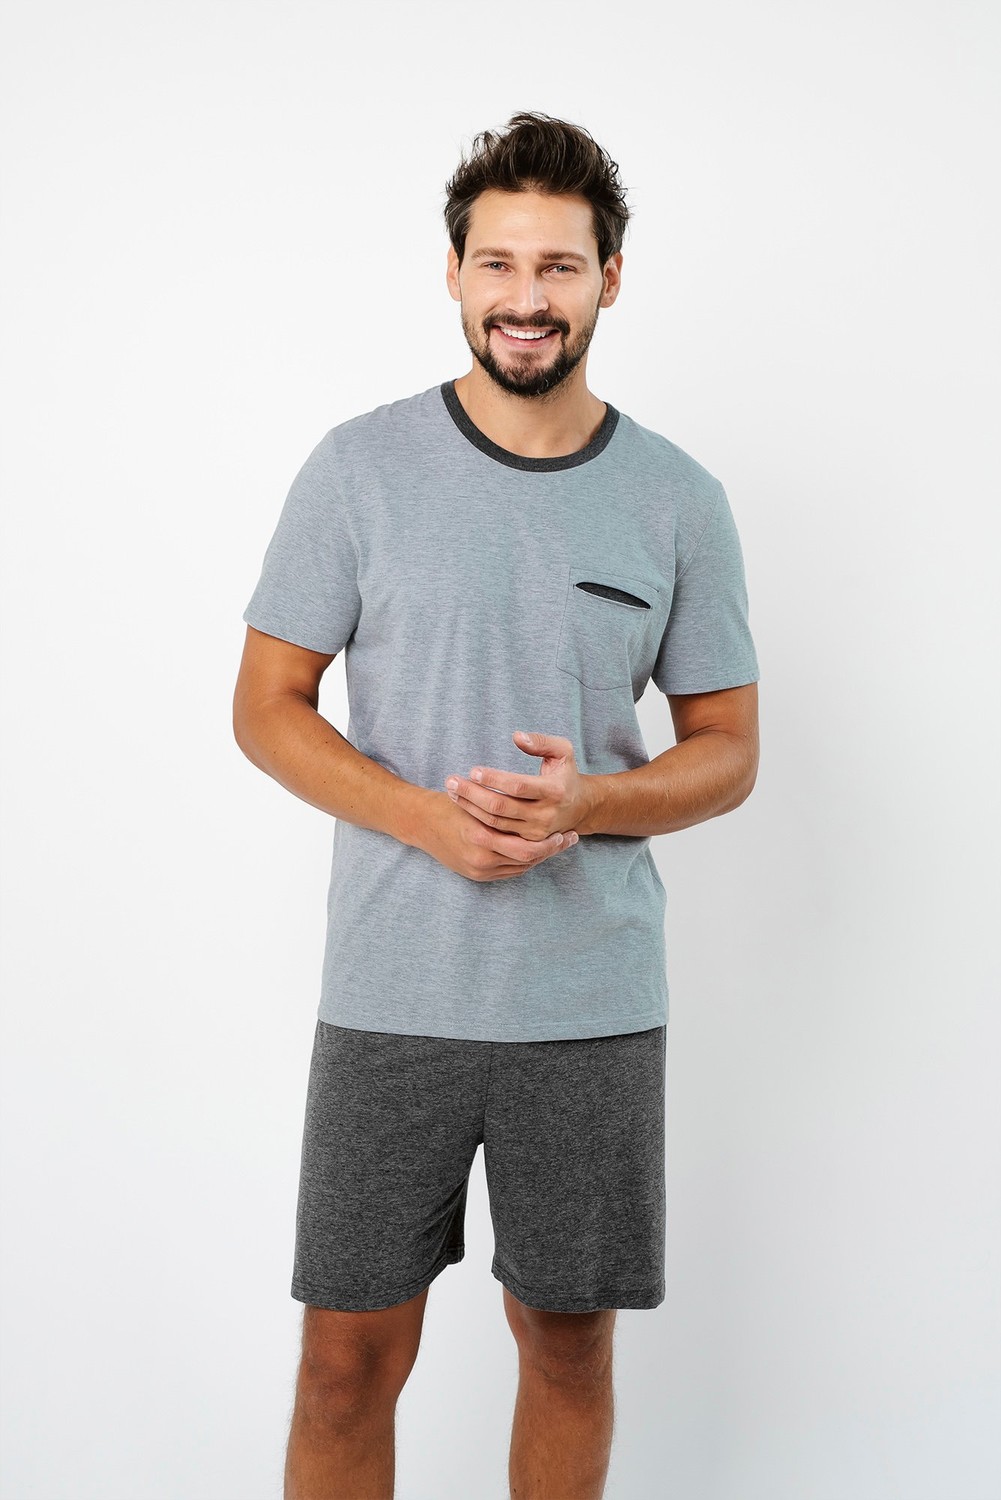 Pánské pyžamo Stefano, krátký rukáv, krátké kalhoty - melange/tmavá melanž